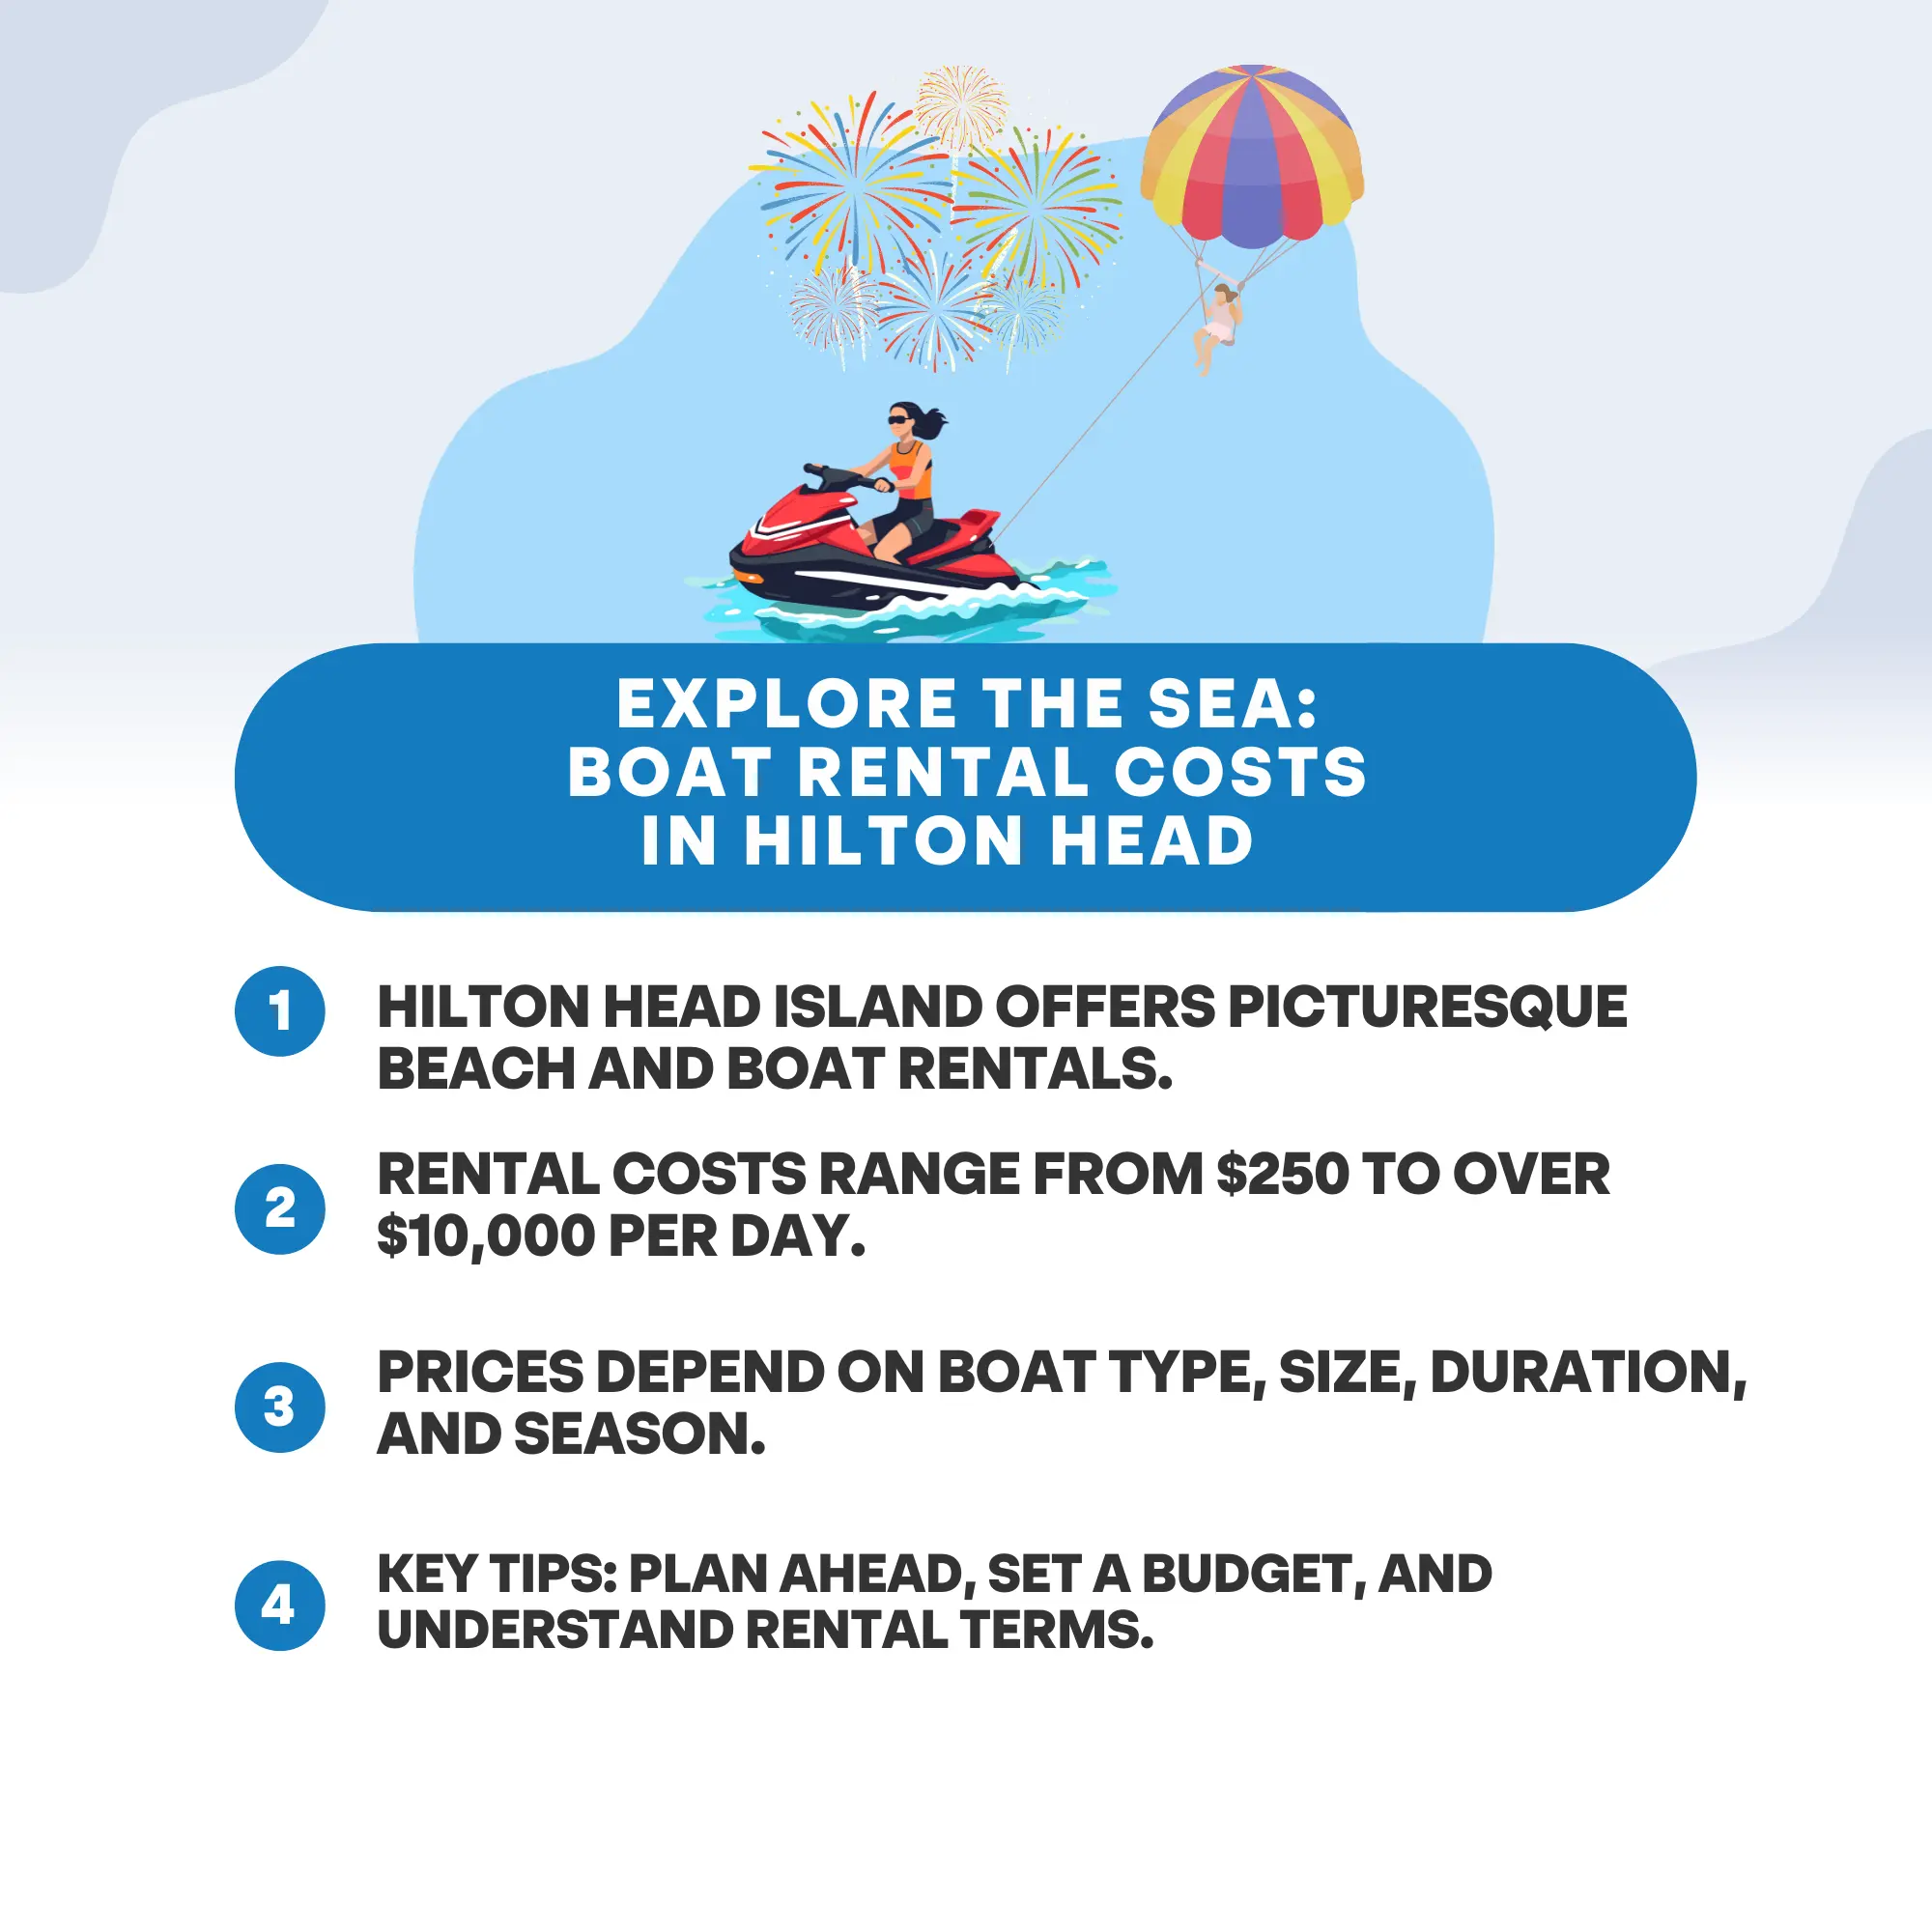 Explore the Sea: Boat Rental Costs in Hilton Head